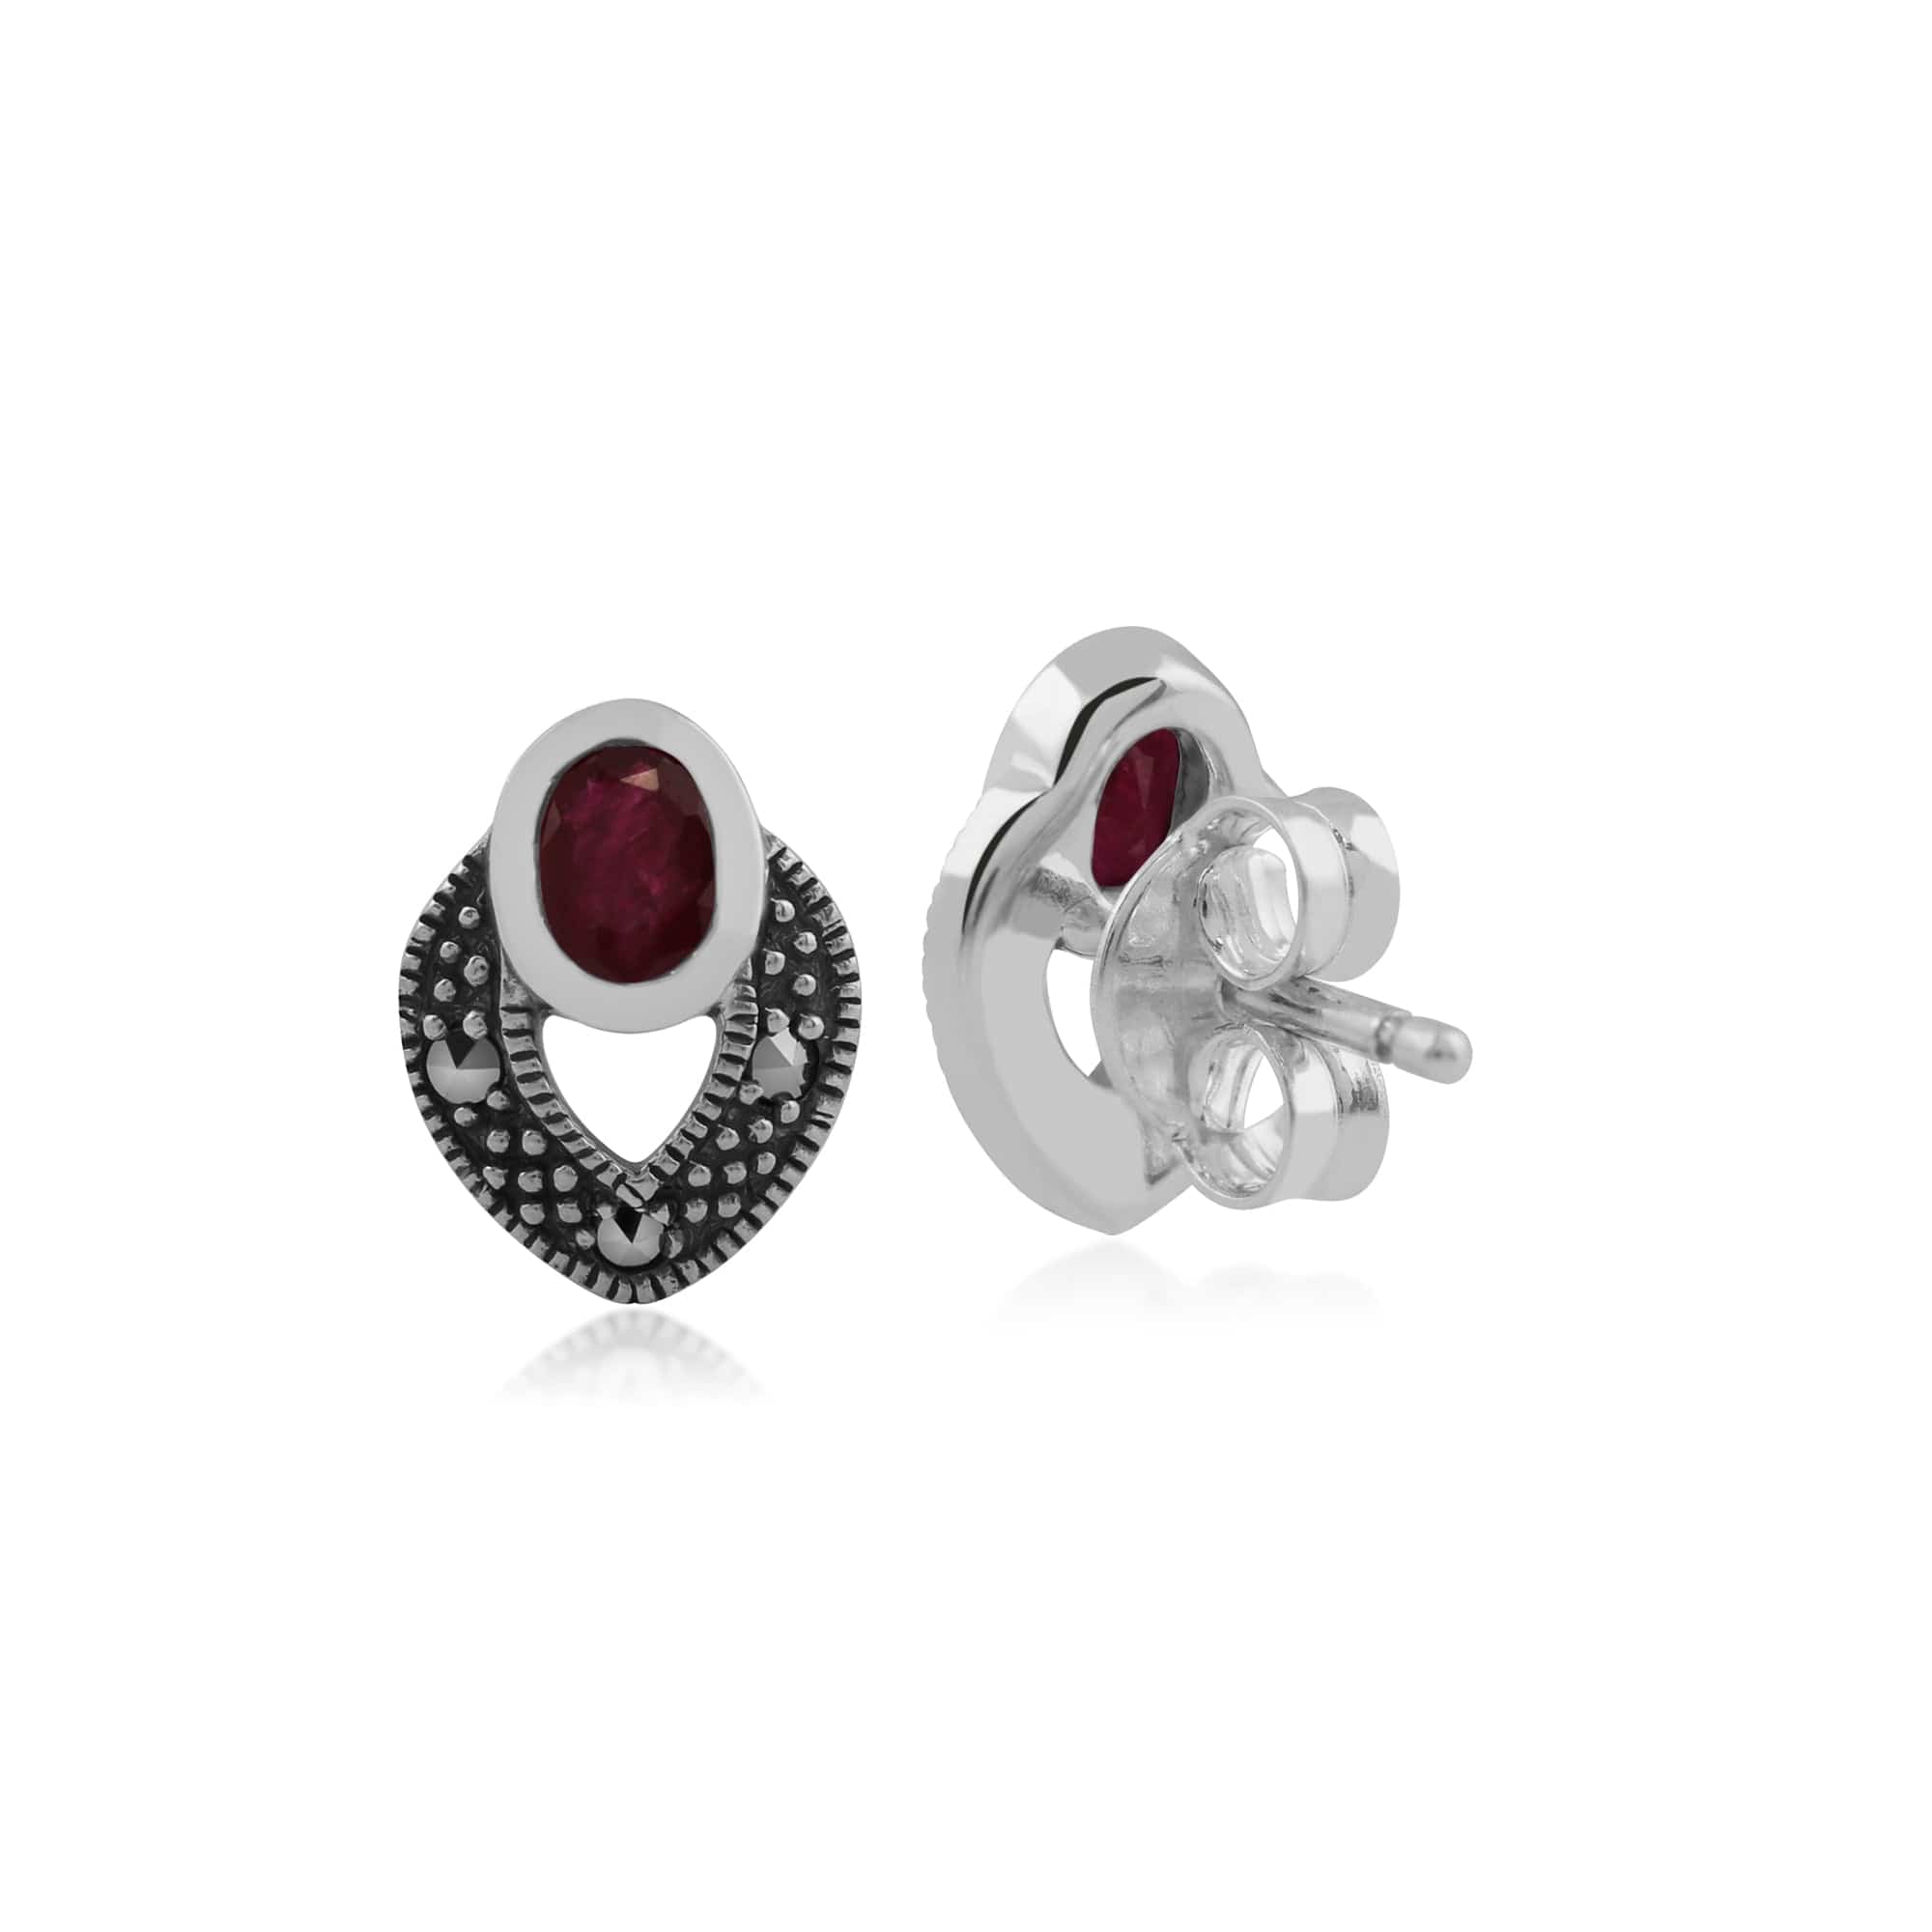 214E717809925 Art Deco Style Oval Ruby & Marcasite Stud Earrings in 925 Sterling Silver 2